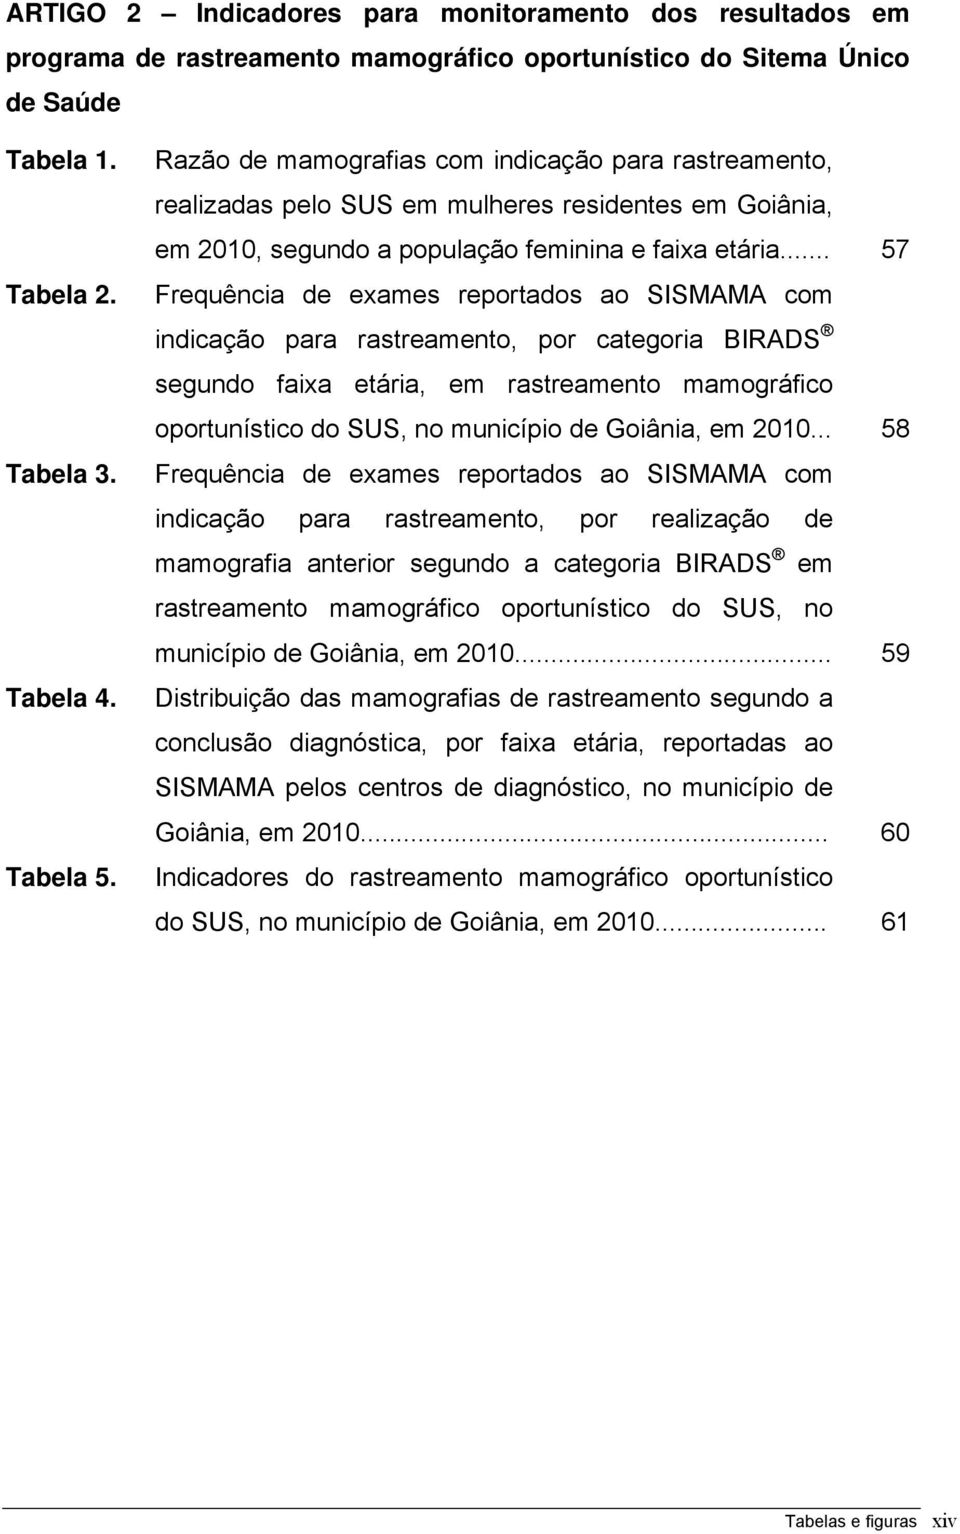 .. 57 Frequência de exames reportados ao SISMAMA com indicação para rastreamento, por categoria BIRADS segundo faixa etária, em rastreamento mamográfico oportunístico do SUS, no município de Goiânia,